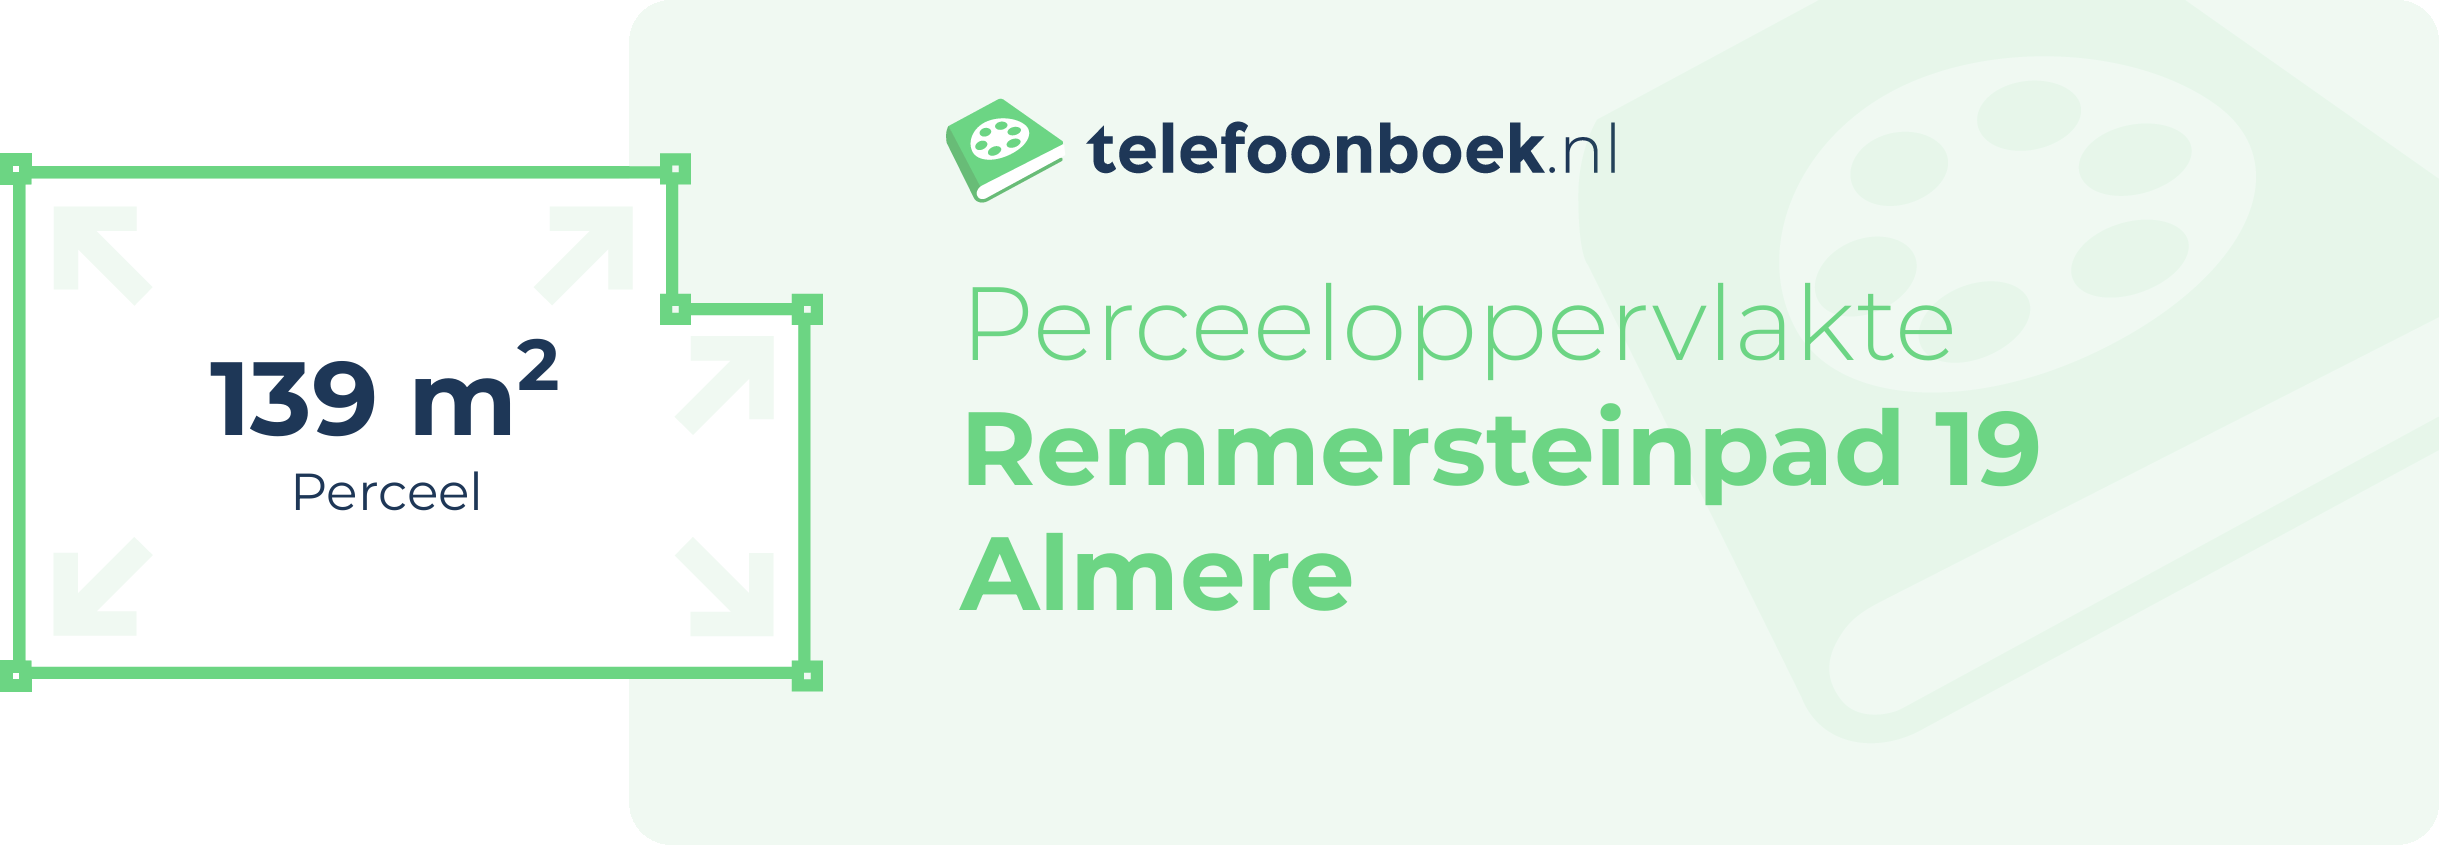 Perceeloppervlakte Remmersteinpad 19 Almere